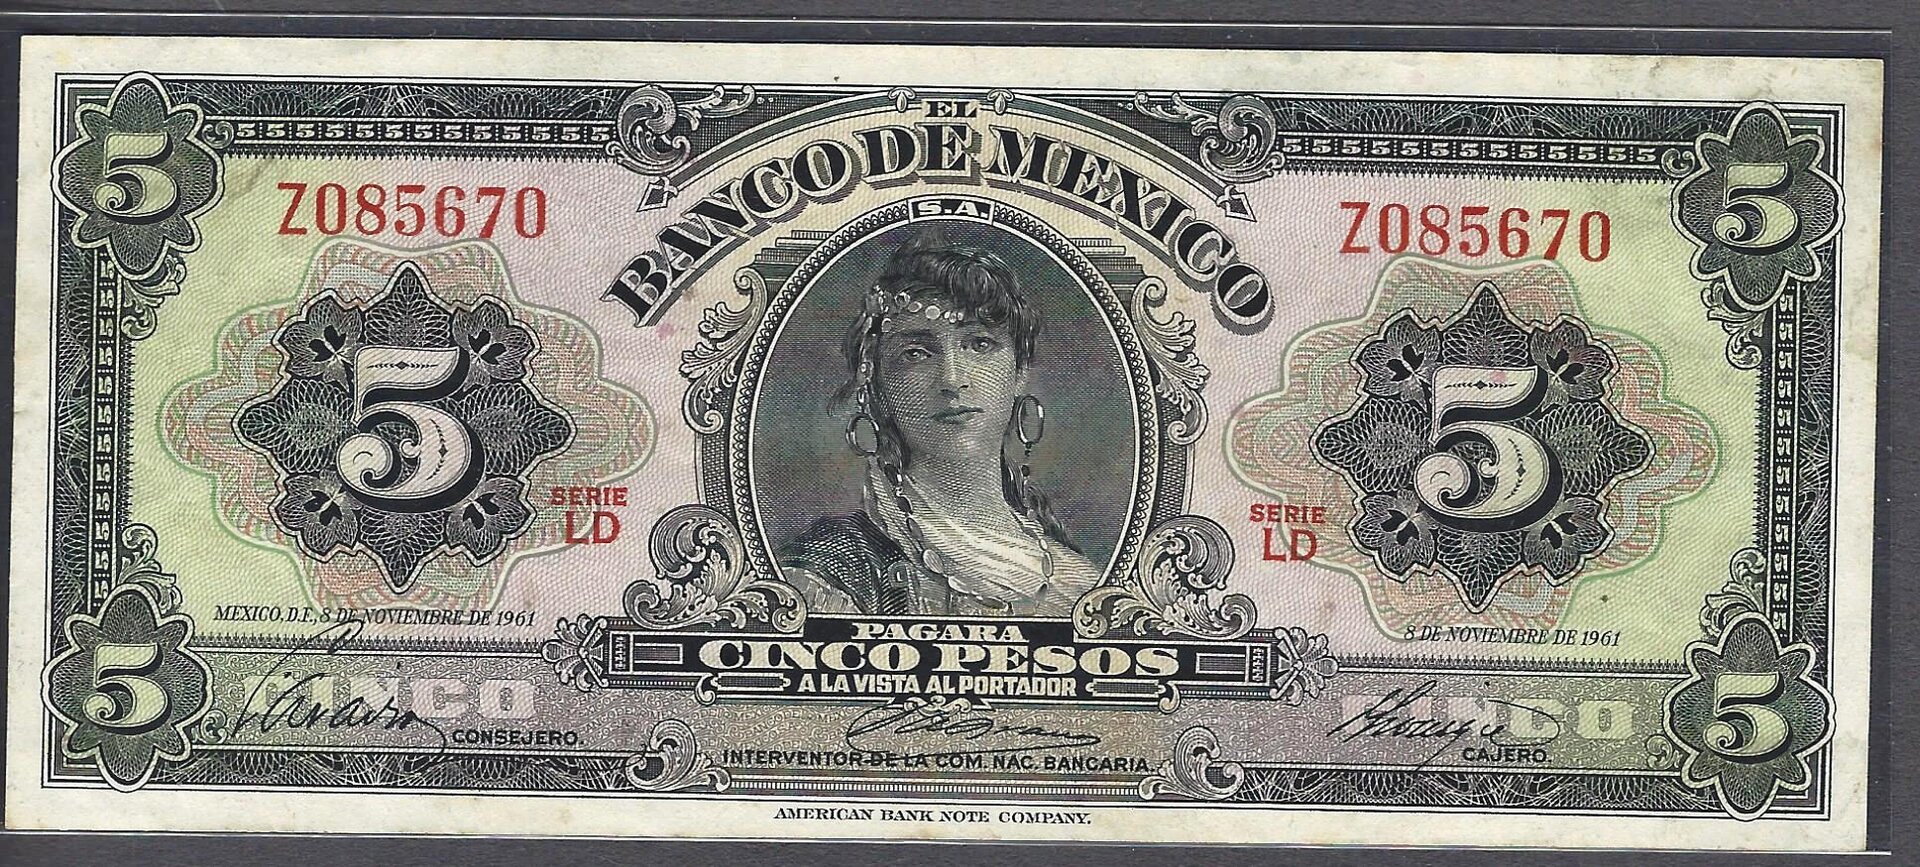 mexico_1961_5 pesos_serie-LD_Z085670_face.jpg